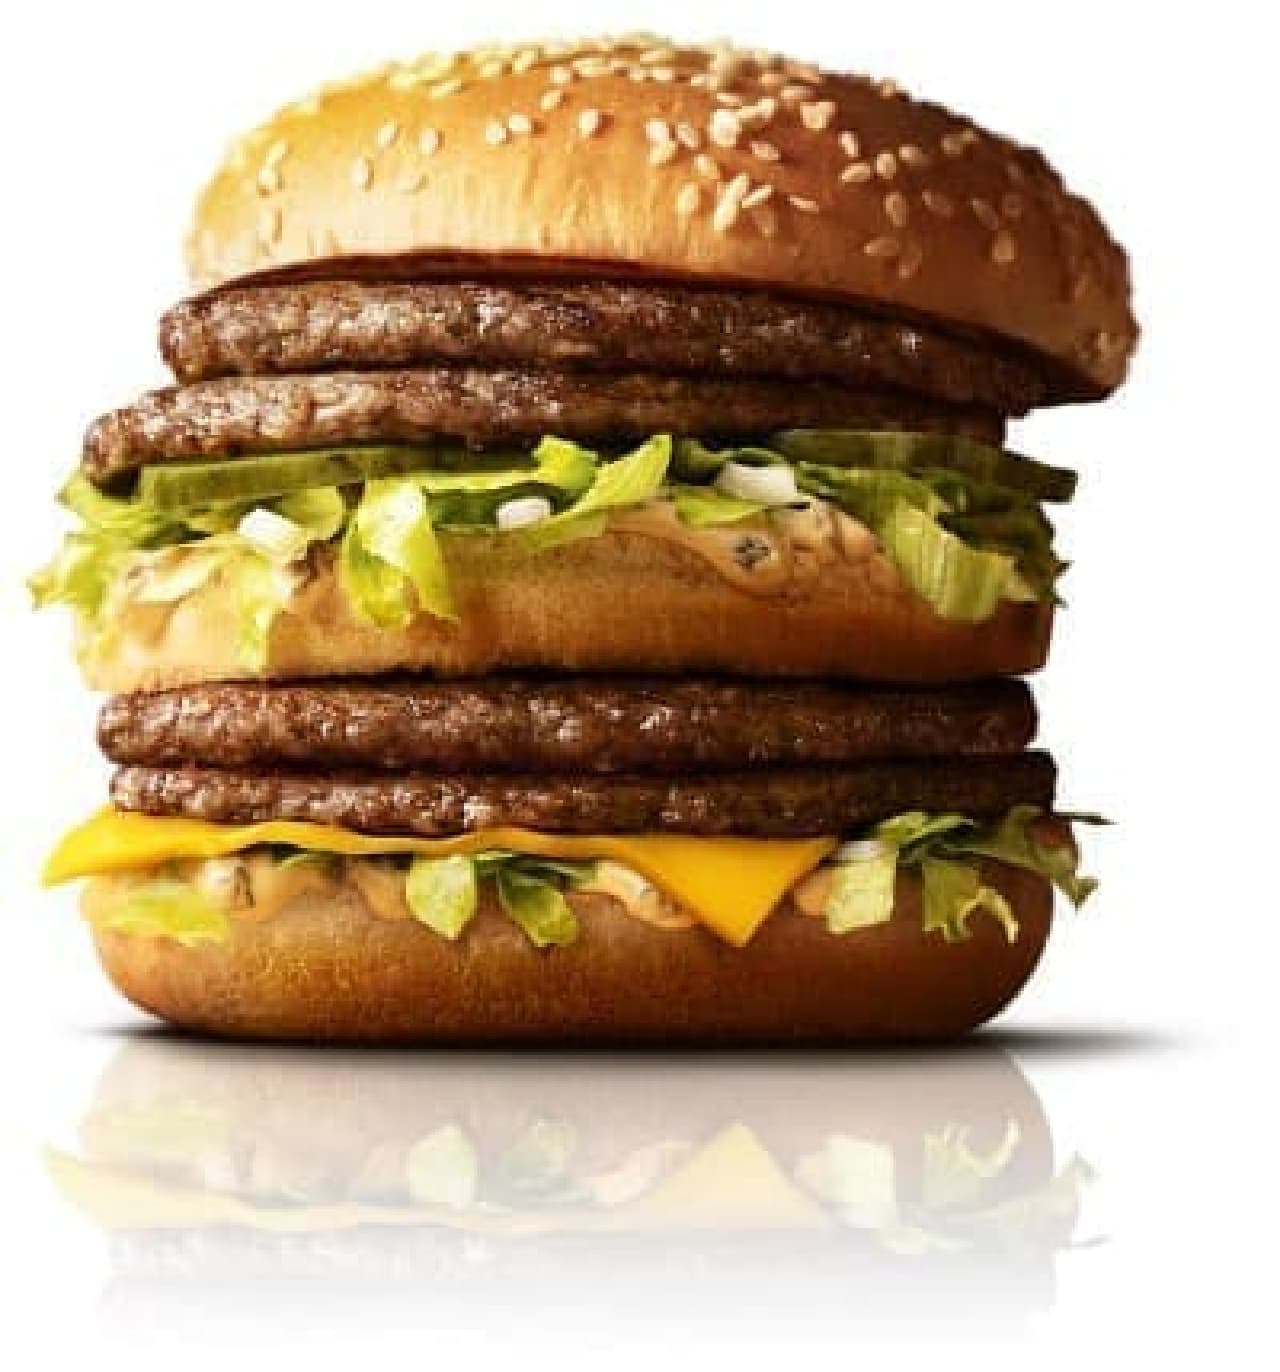 McDonald's "Double Big Mac"